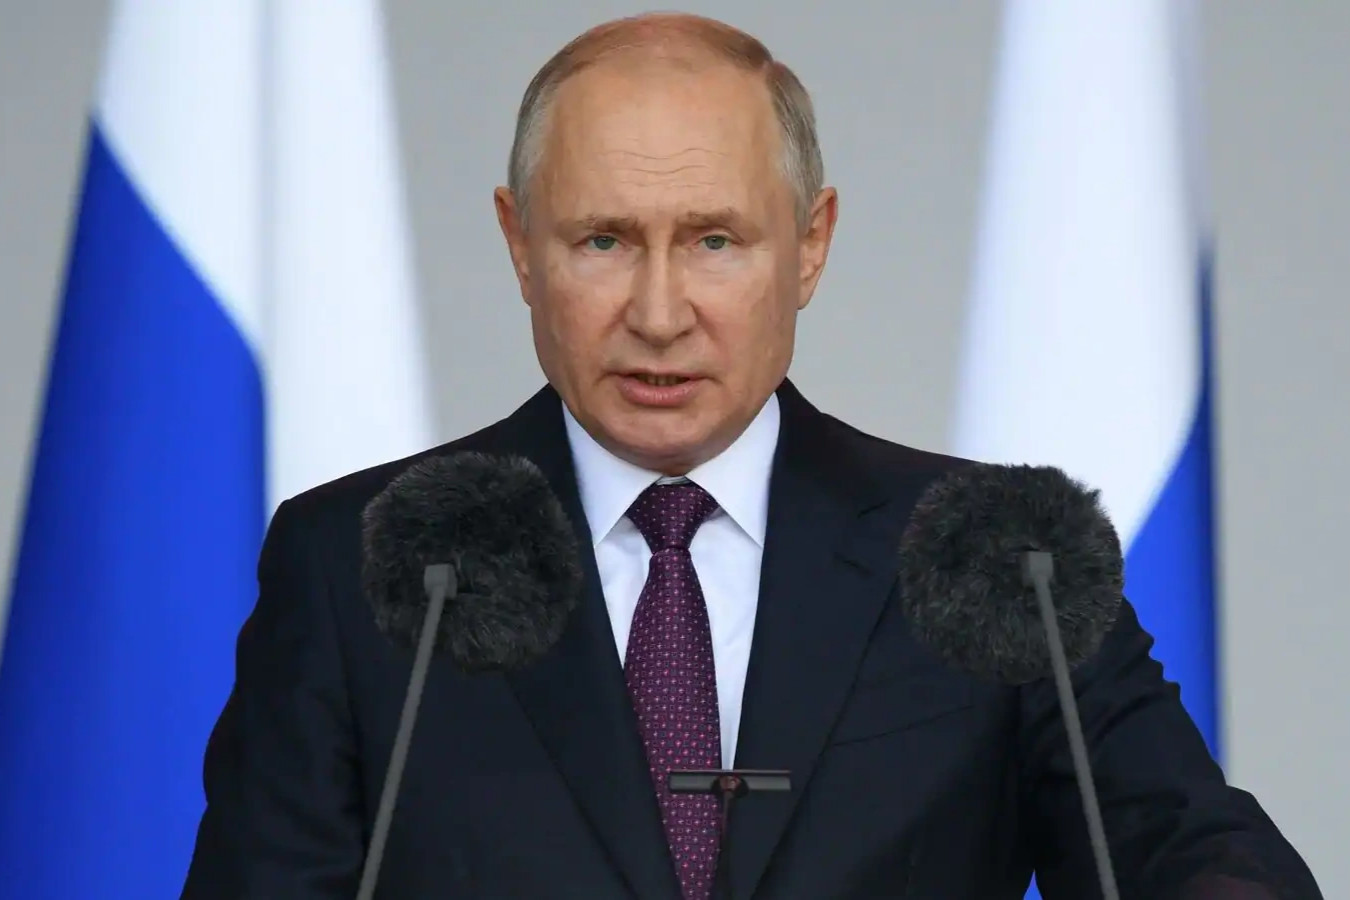 Đài Nga bị chiếm sóng, phát thông điệp giả mạo Tổng thống Putin - 1